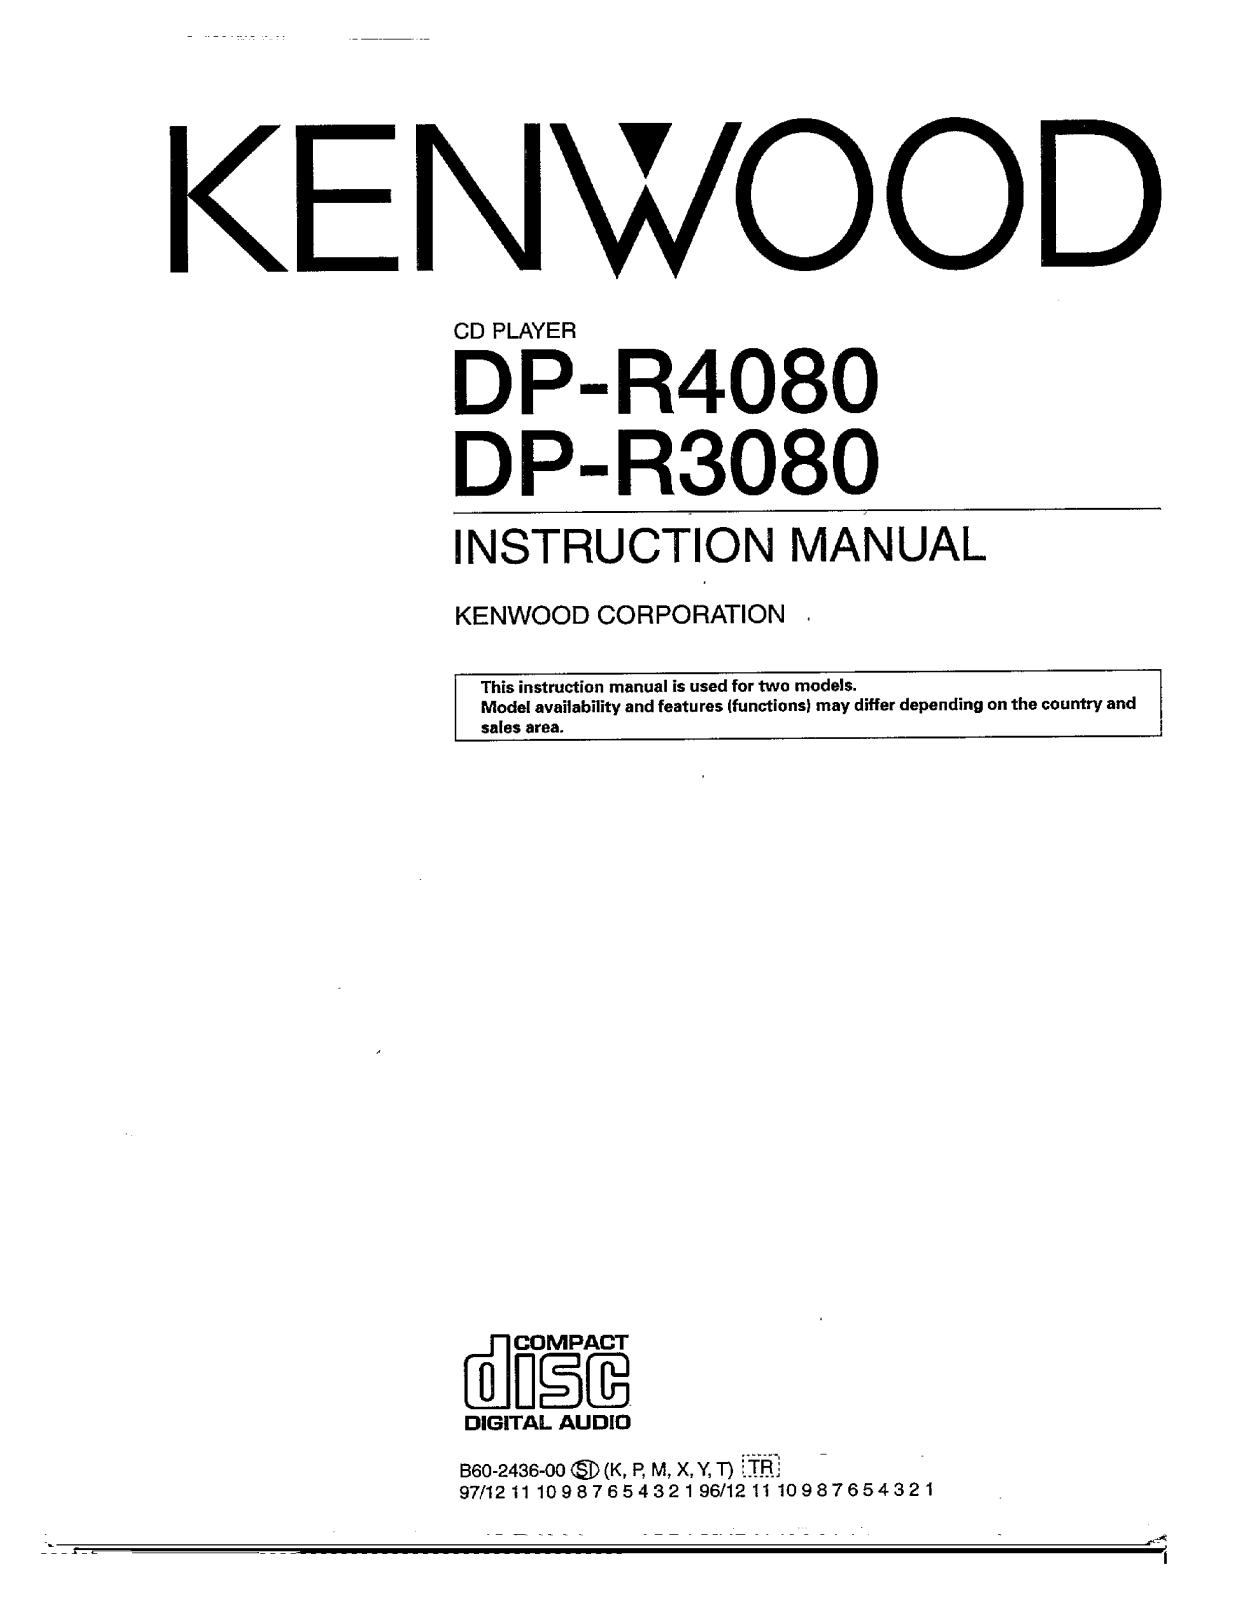 Kenwood DP-R3080, DP-R4080 Owner's Manual